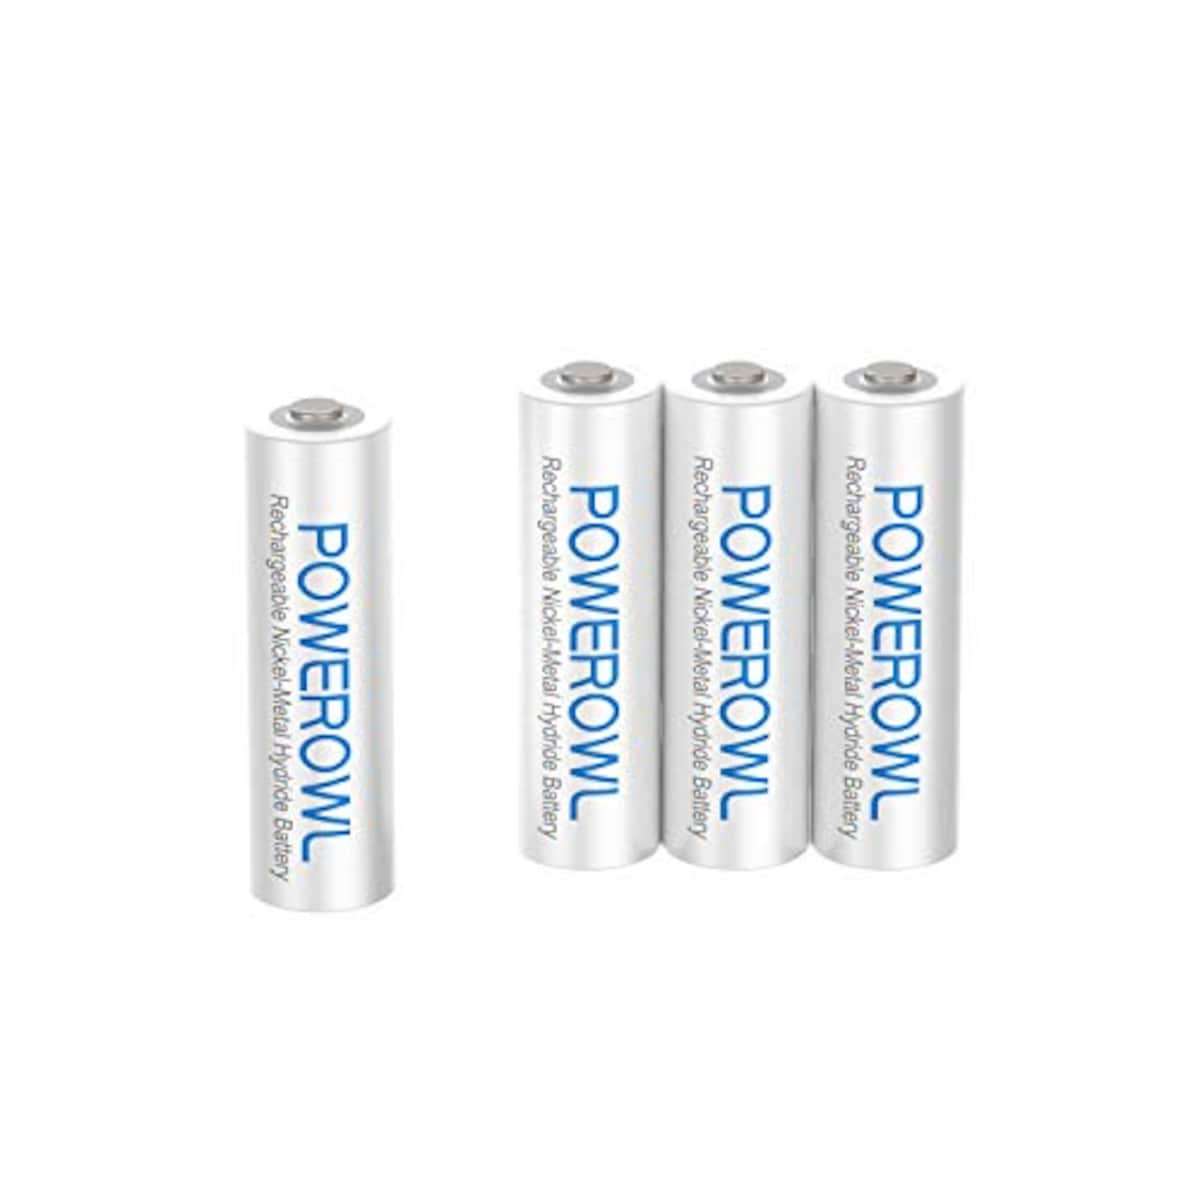  Powerowl単4形充電式ニッケル水素電池  4個セット画像2 